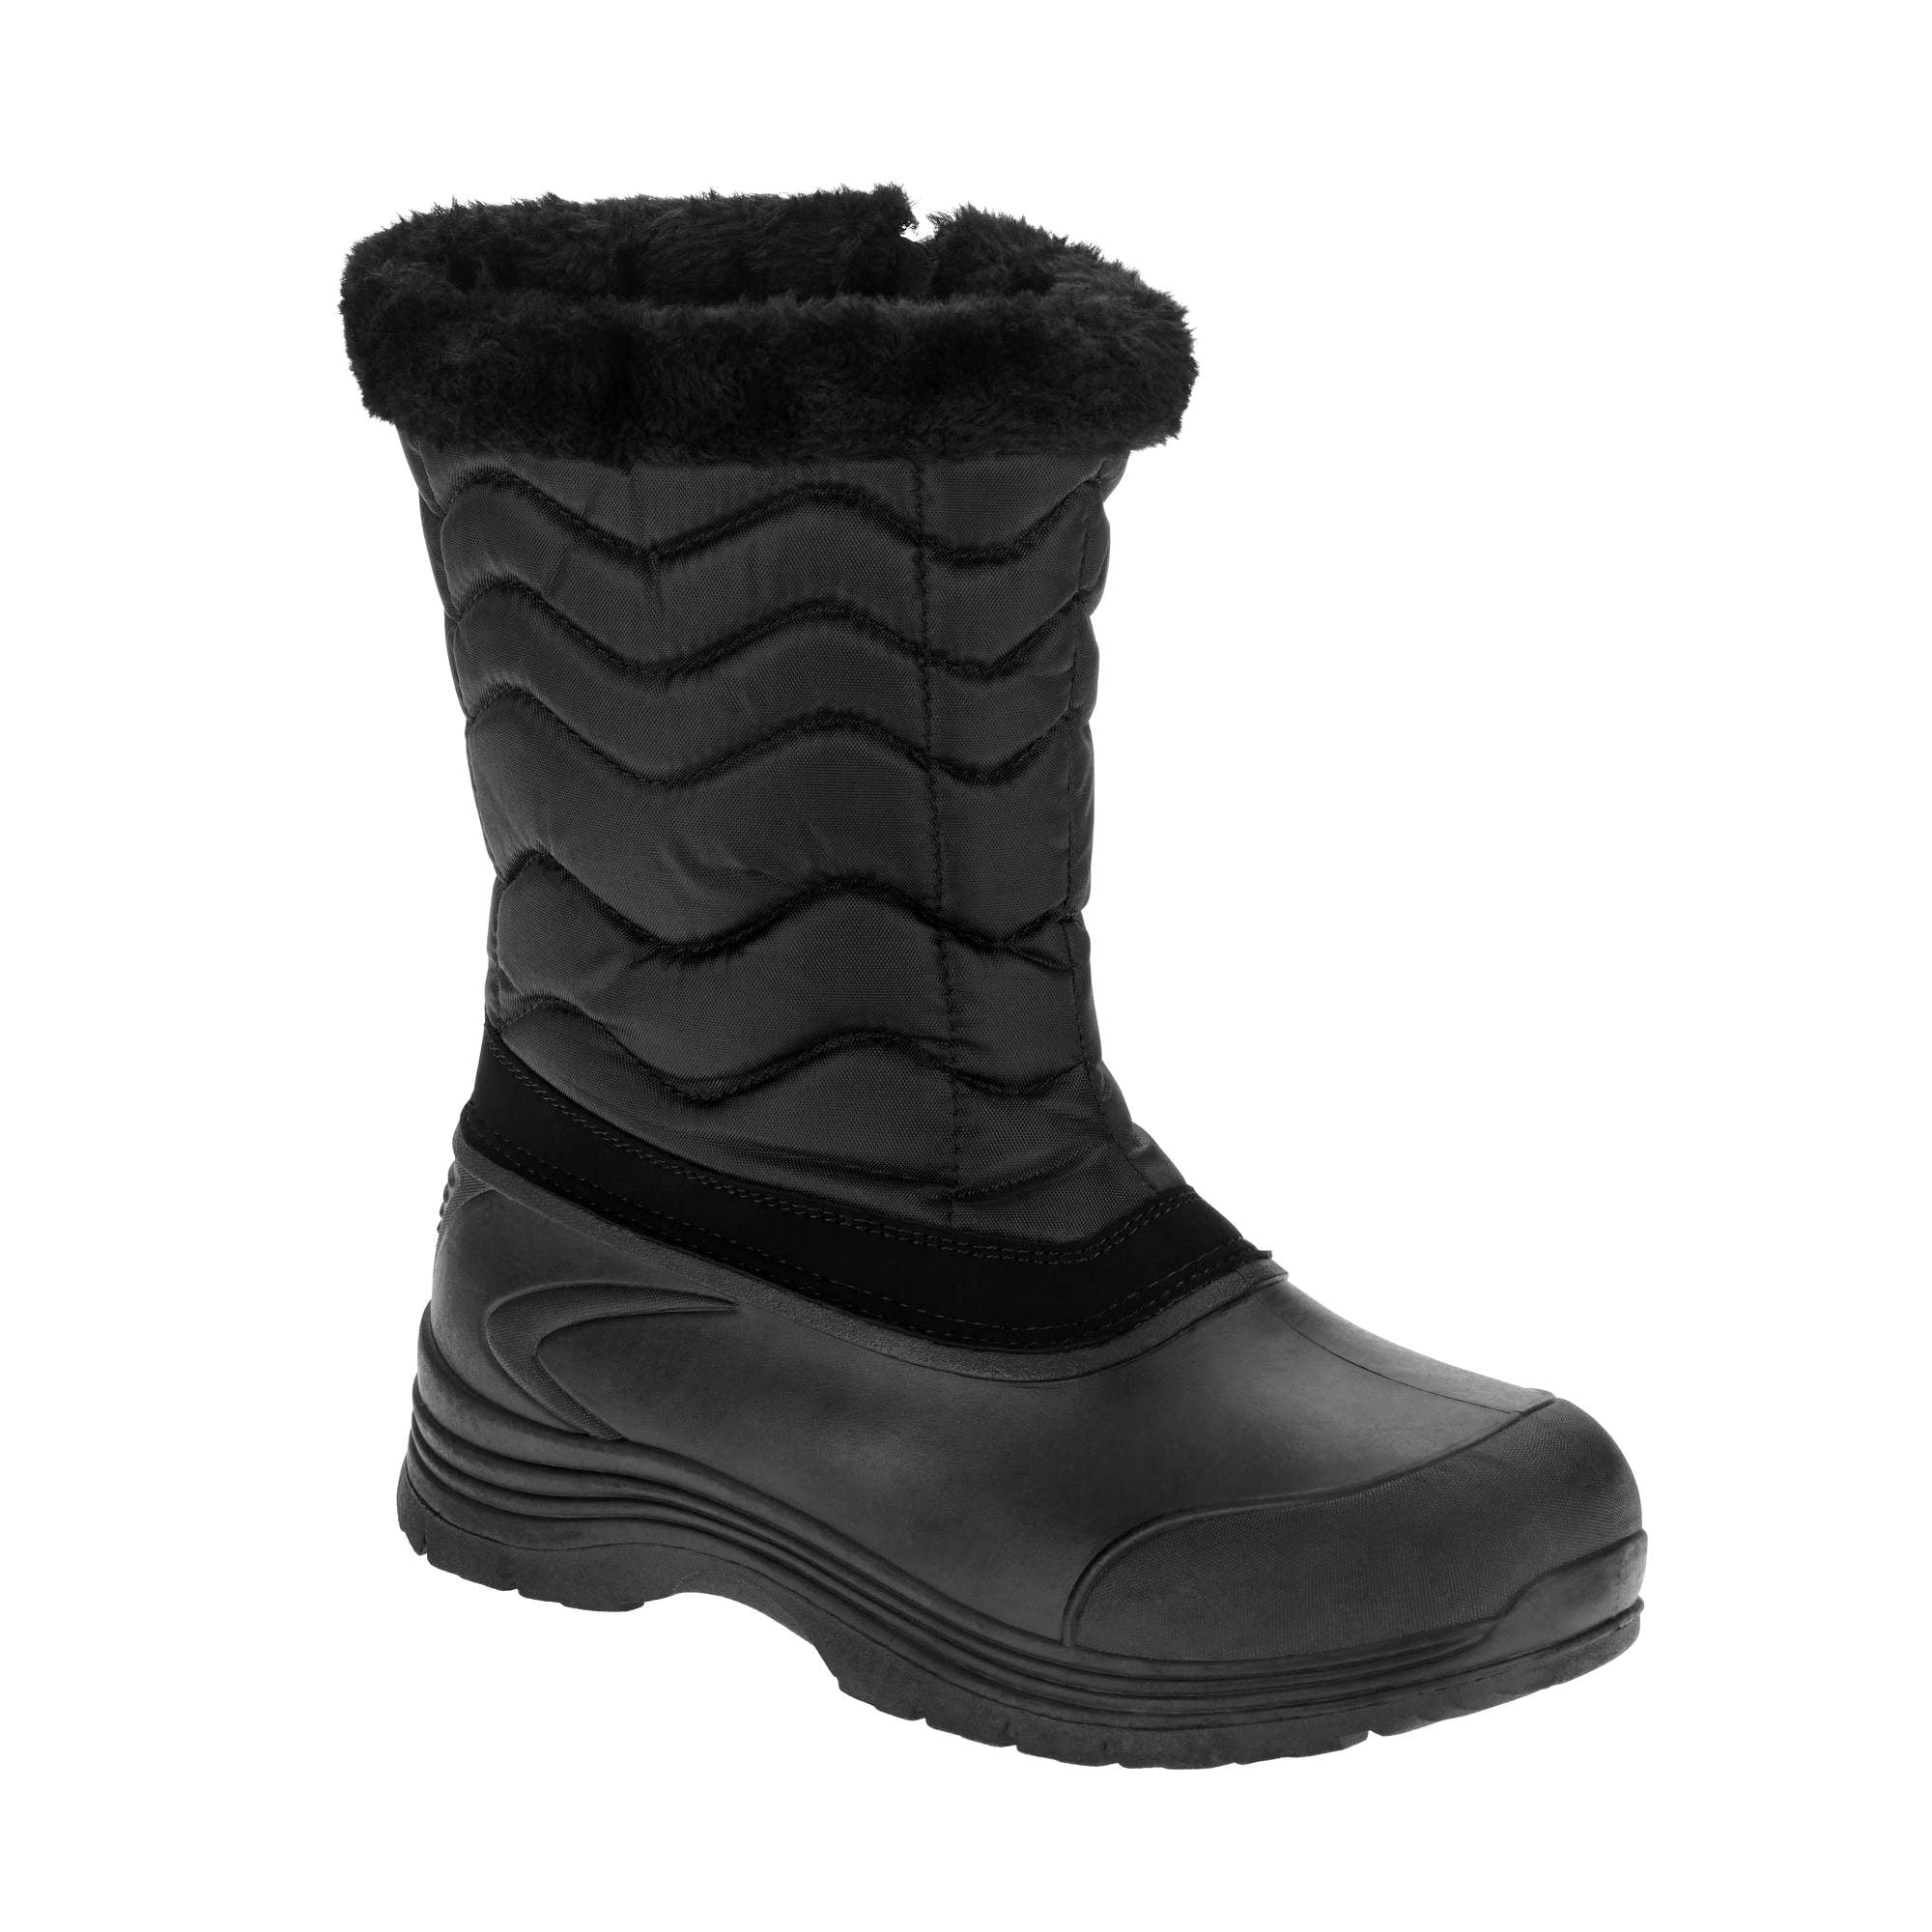 Women's Waterproof Winter Boot - Walmart.com